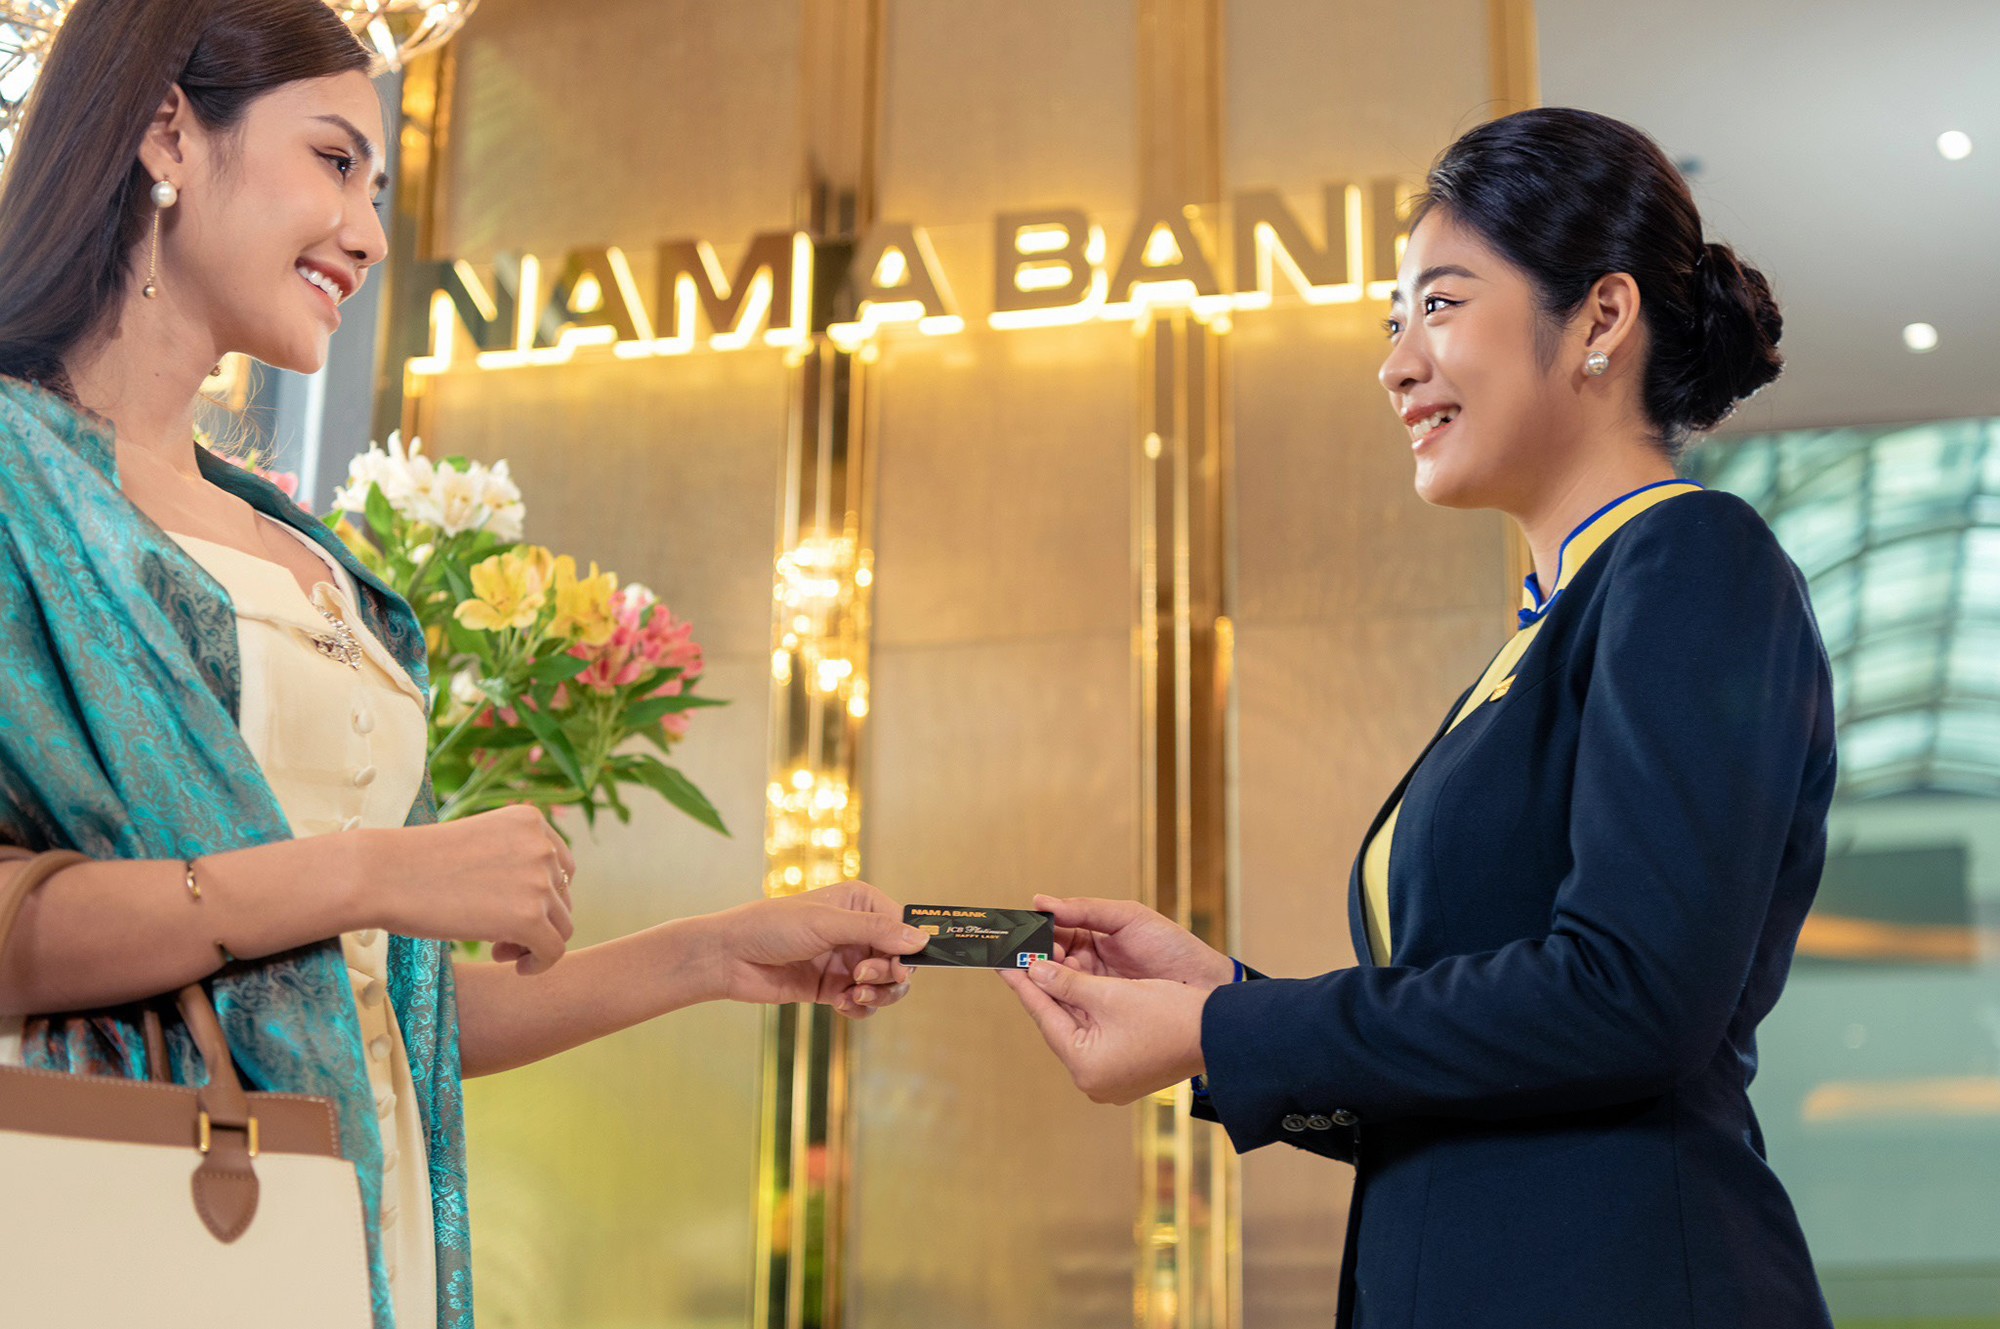 Chủ thẻ tín dụng Nam A Bank sở hữu nhiều đặc quyền ưu đãi hấp dẫn.